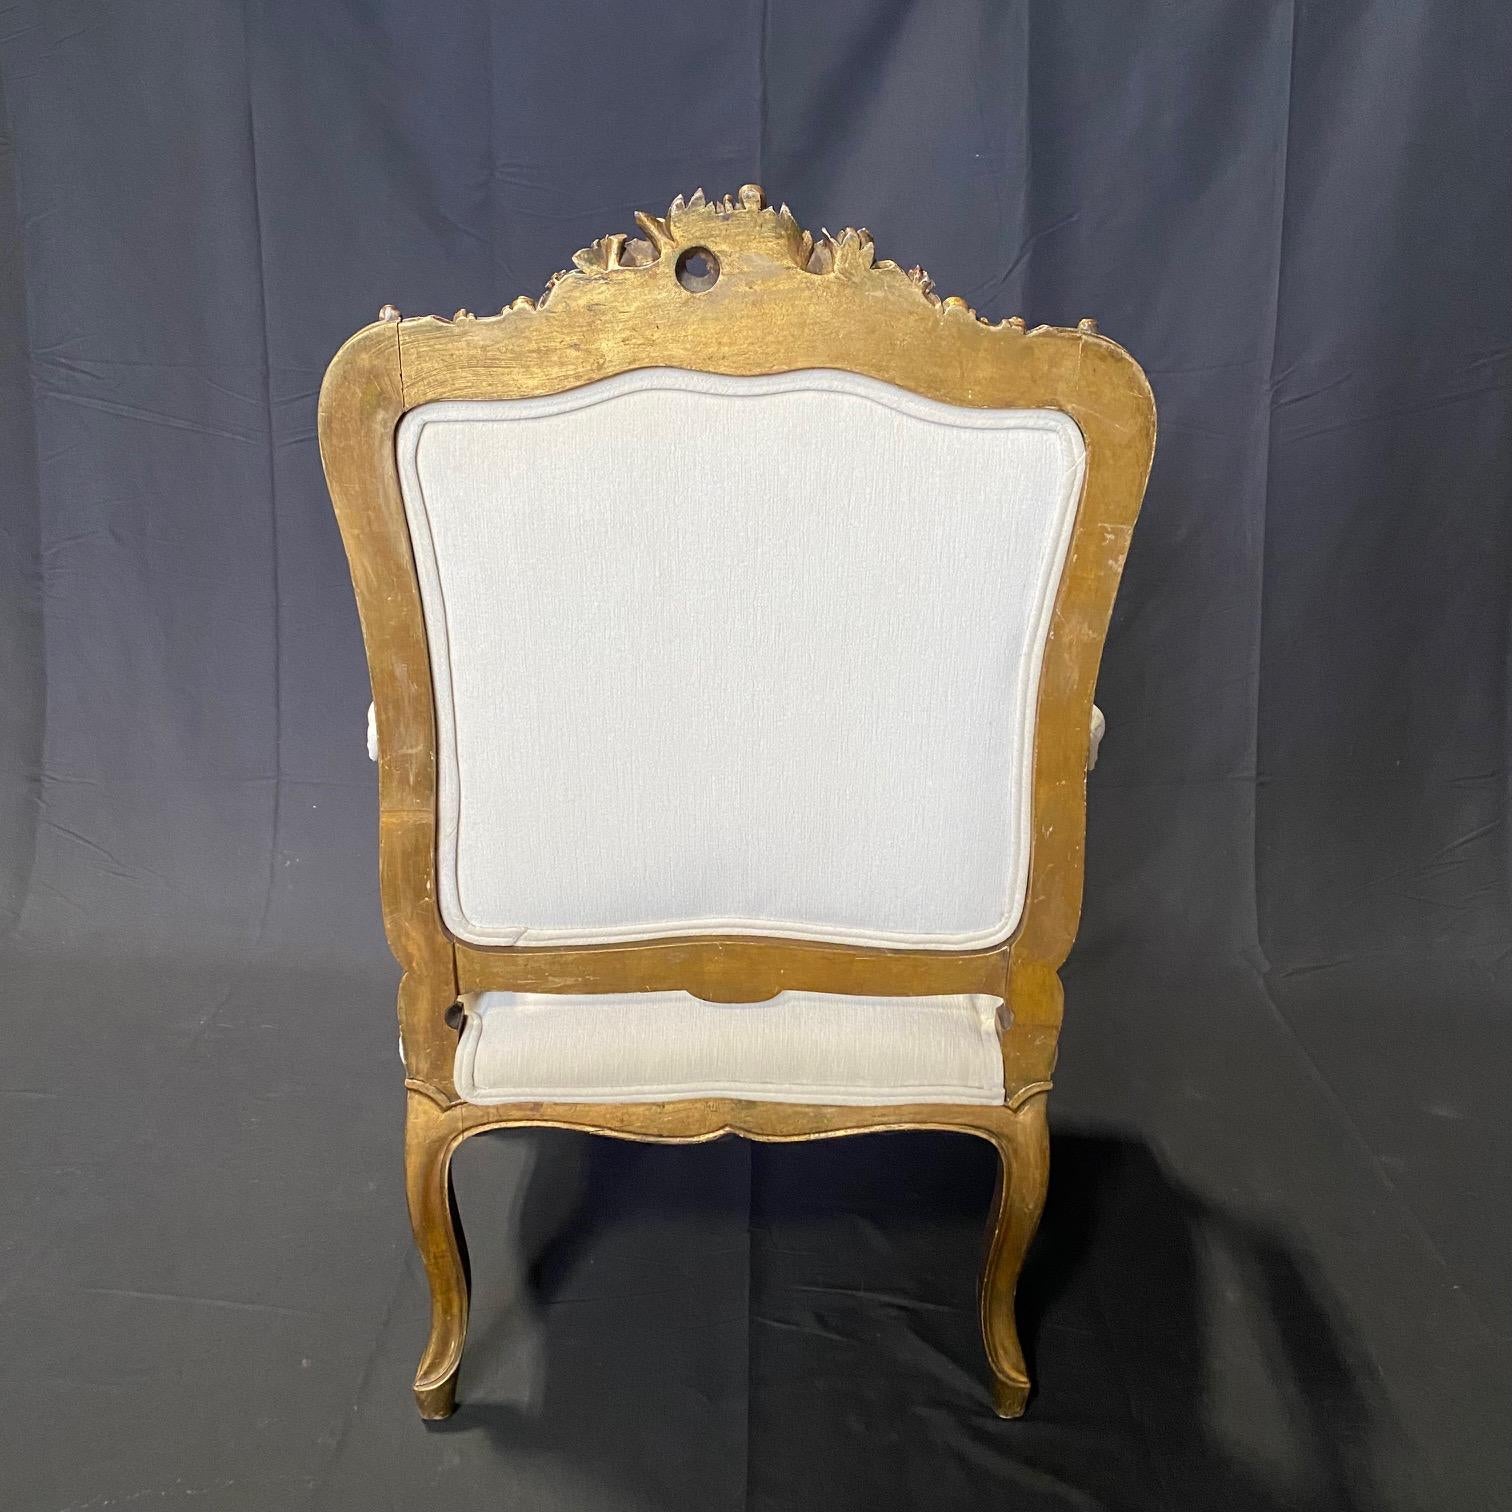 Cette paire de fauteuils Fabrice, nouvellement tapissée de tissu neutre, est très élégante, avec des dossiers, des tabliers et des accoudoirs élégants et délicieusement sculptés. Cadre ancien et solide, peinture dorée d'origine, avec des accents